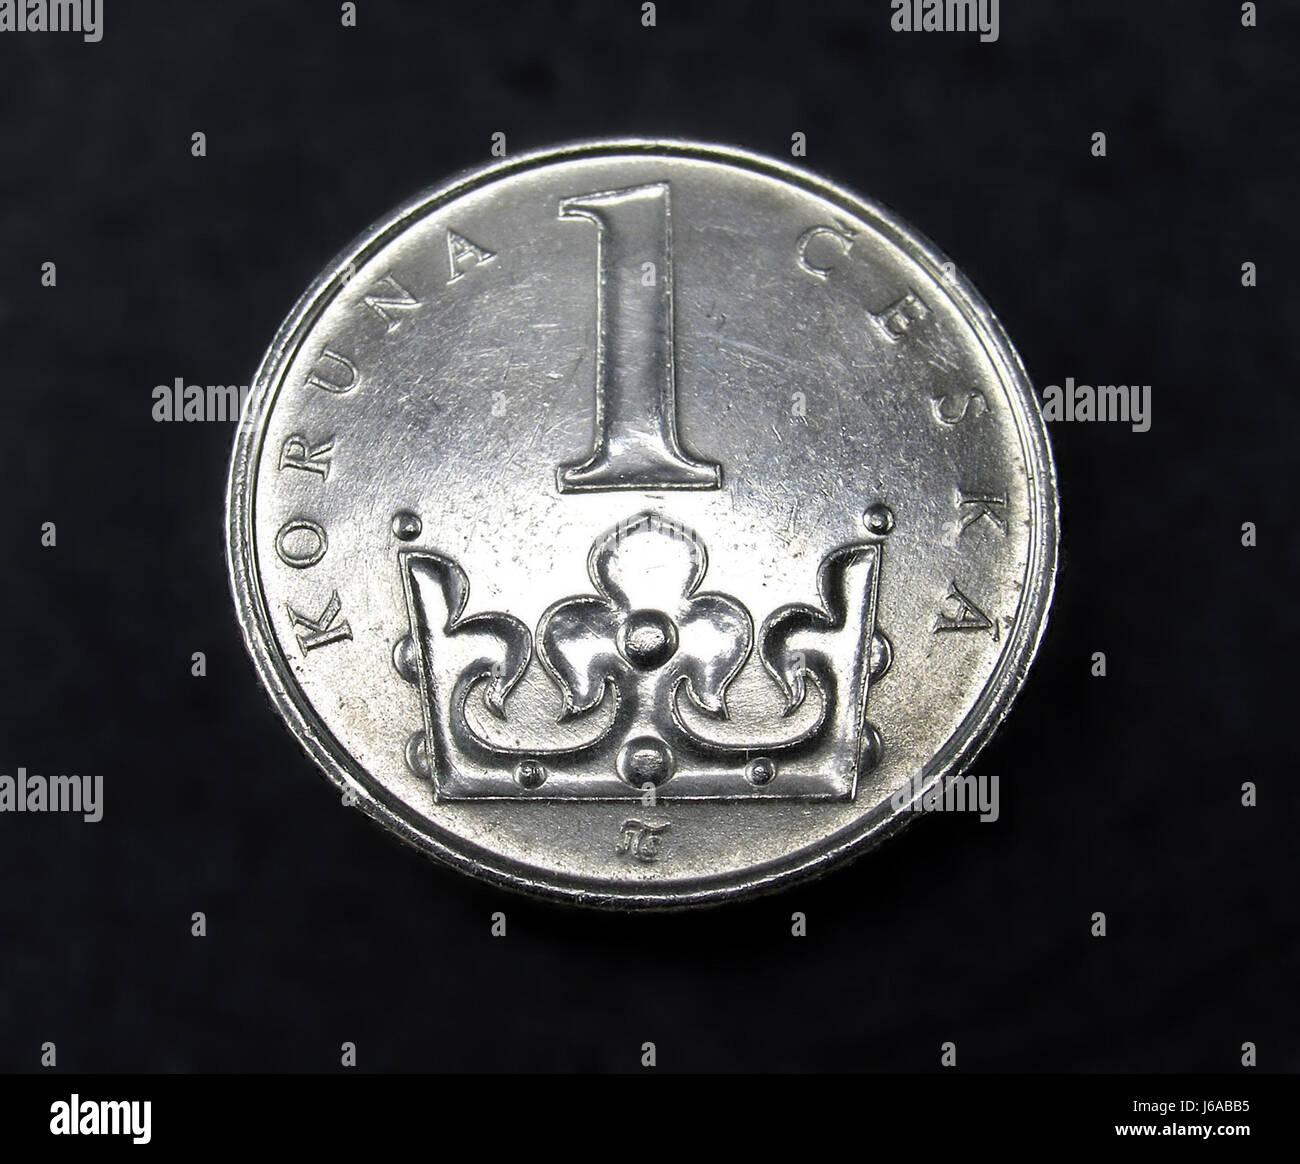 Währung Münze Metall metallic Tschechische Kopf Krone Bank kreditgebende Institution Objekt Stockfoto